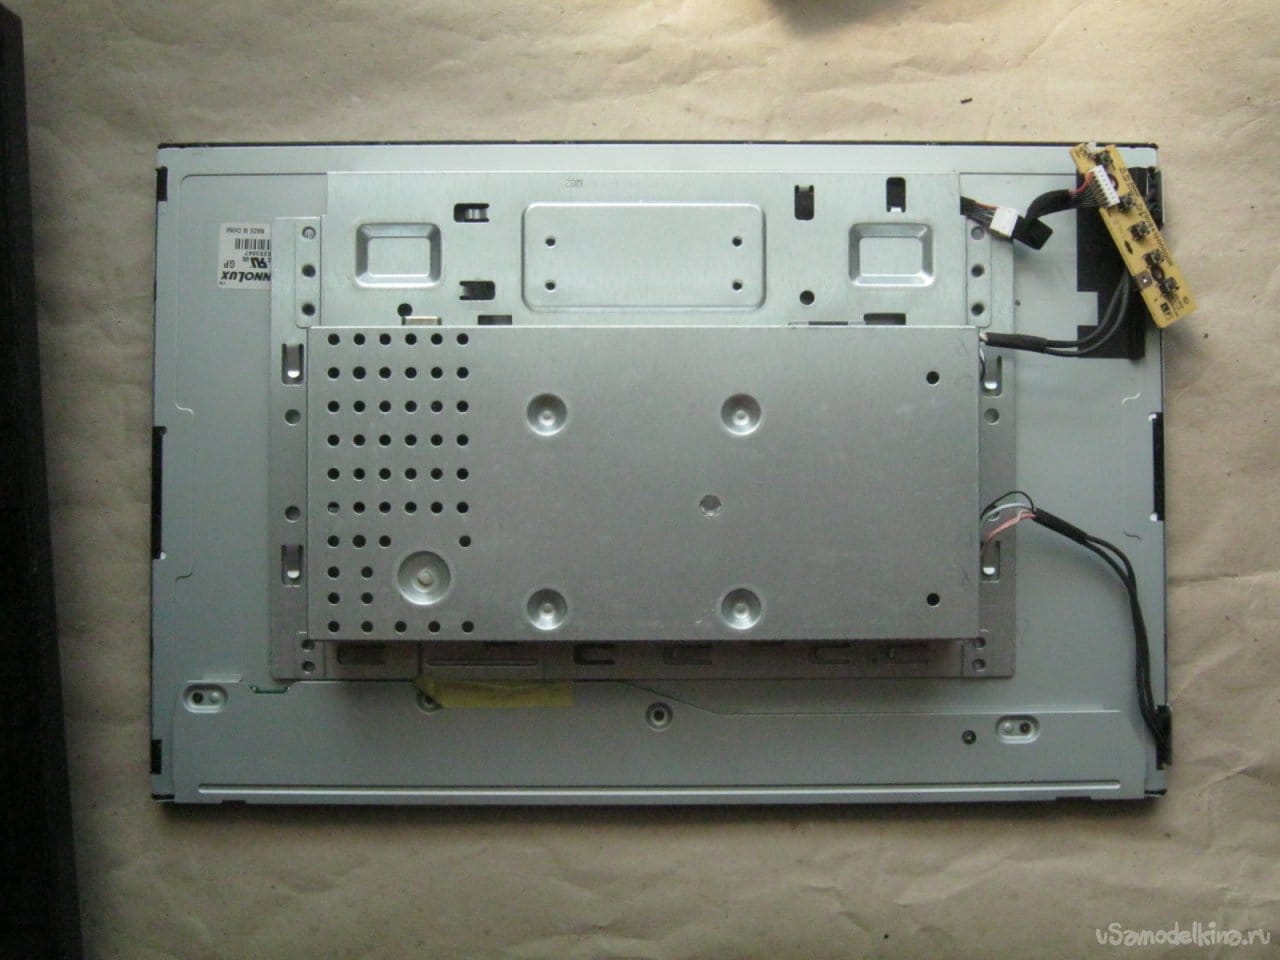 Изготовление и установка светодиодной подсветки ЖК монитора